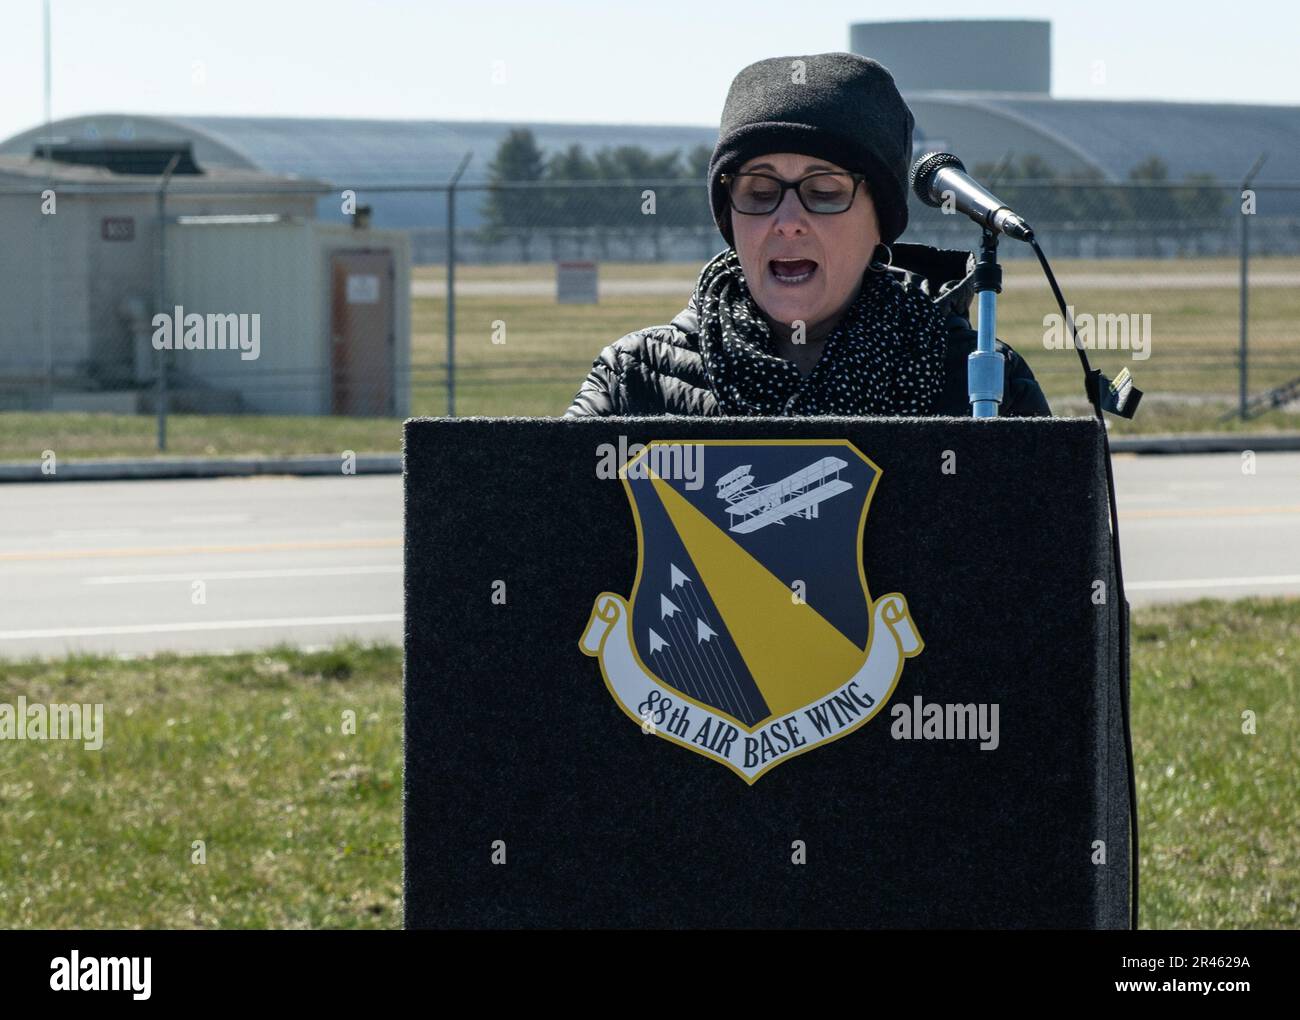 Sarah Amato, spécialiste des affaires publiques de la 88th Escadre de la base aérienne, dirige une conférence de presse simulée 15 mars 2023, à Dayton, en Ohio. La simulation faisait partie d'un exercice de formation sur l'intervention en cas d'urgence mené au Musée national des États-Unis Force aérienne. Banque D'Images